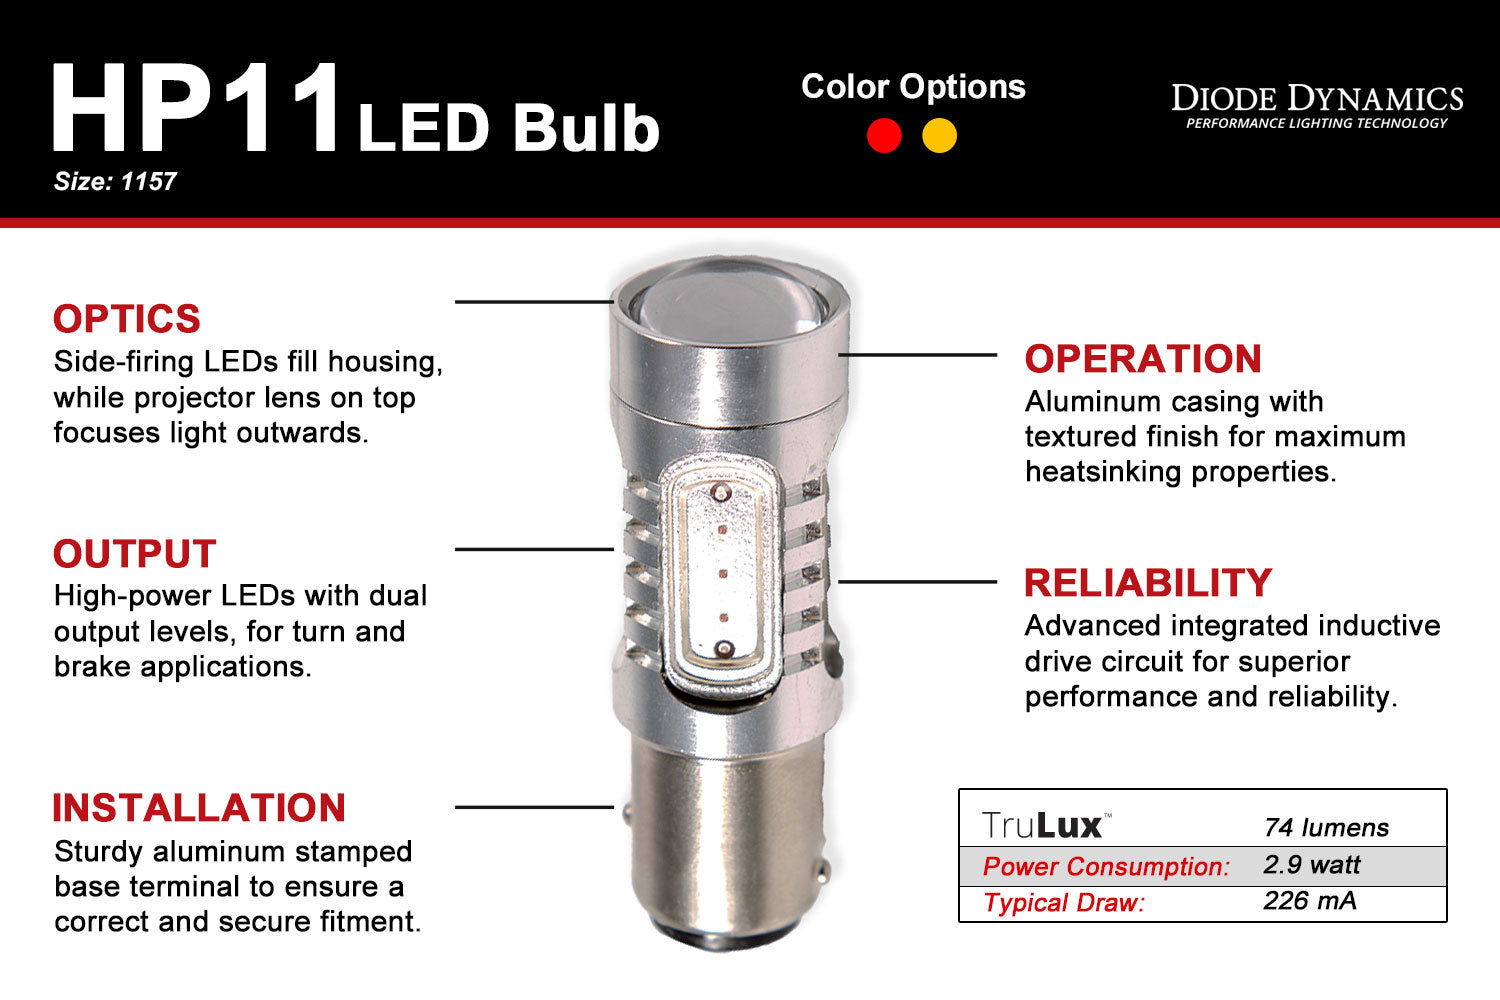 1157 LED Bulb HP11 Diode Dynamics-